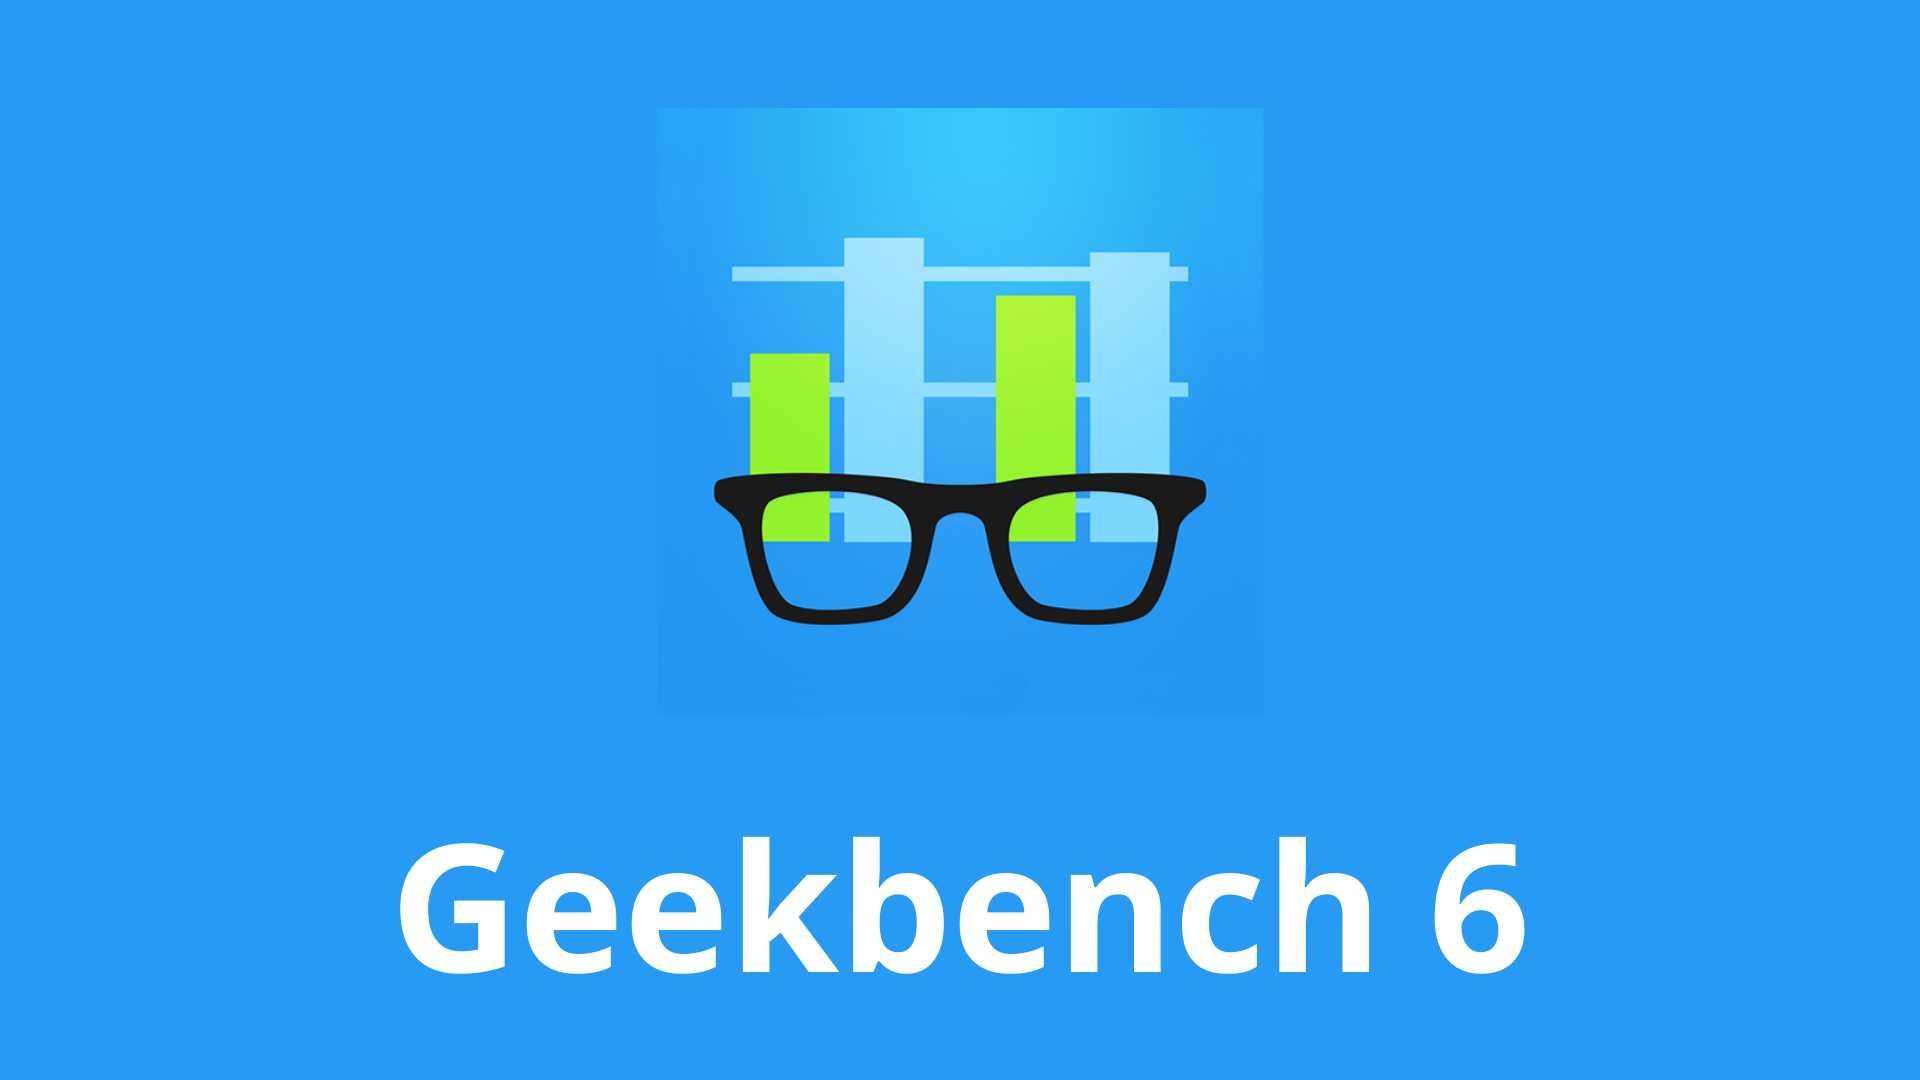 基准革命：Geekbench 6 将关注新因素- GizChina.it